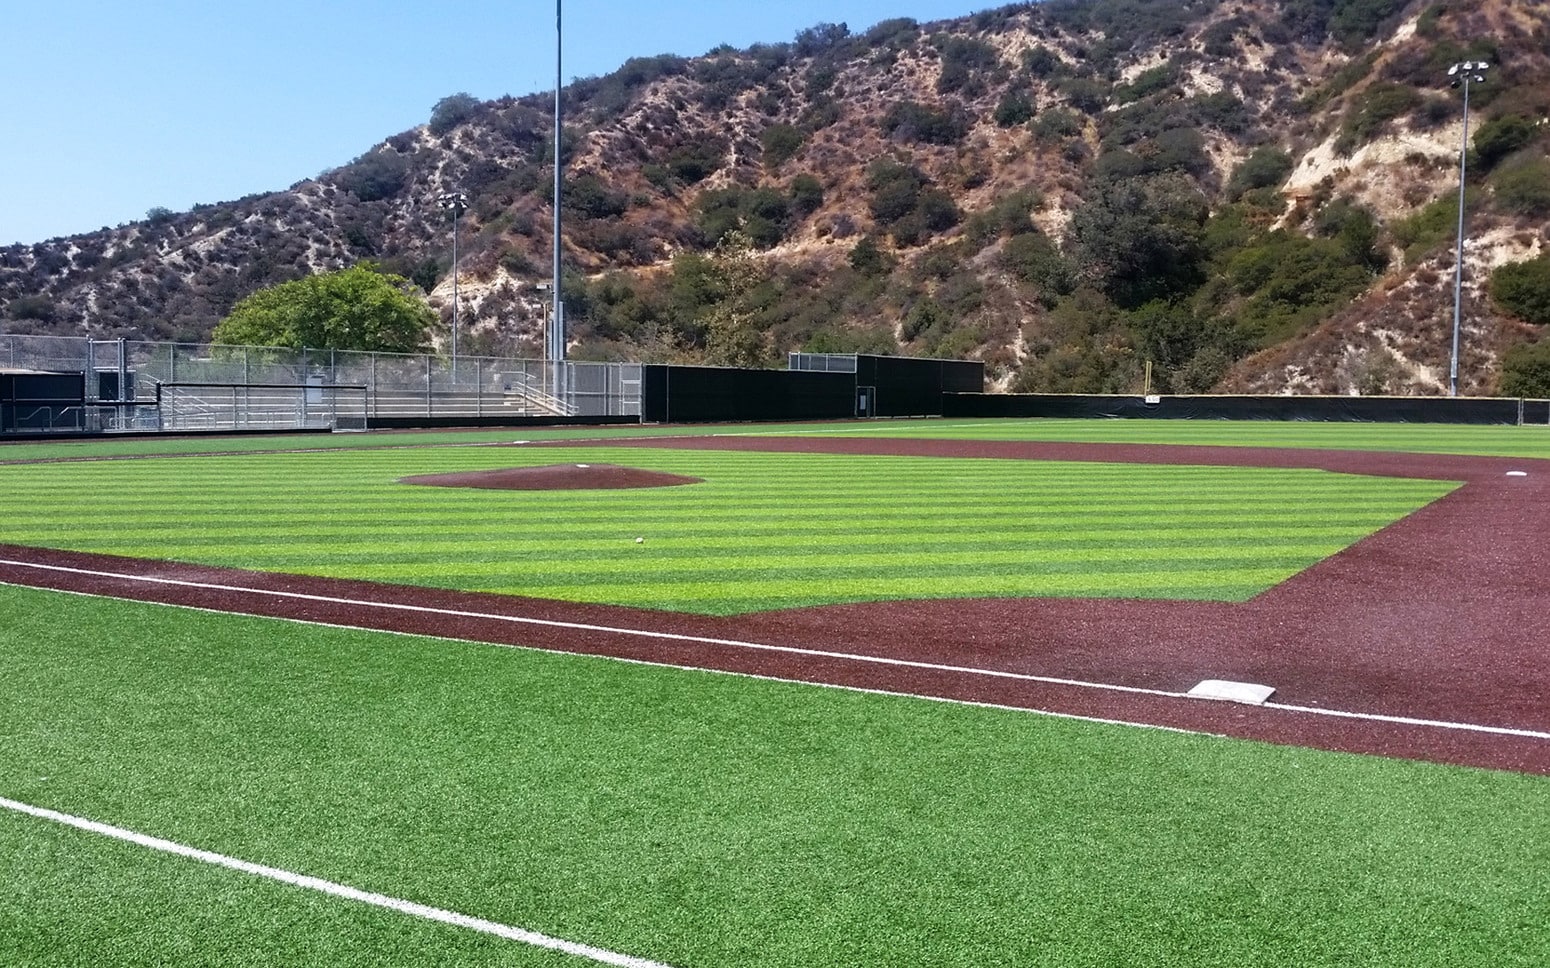 Ball field batting mound, field and bleachers